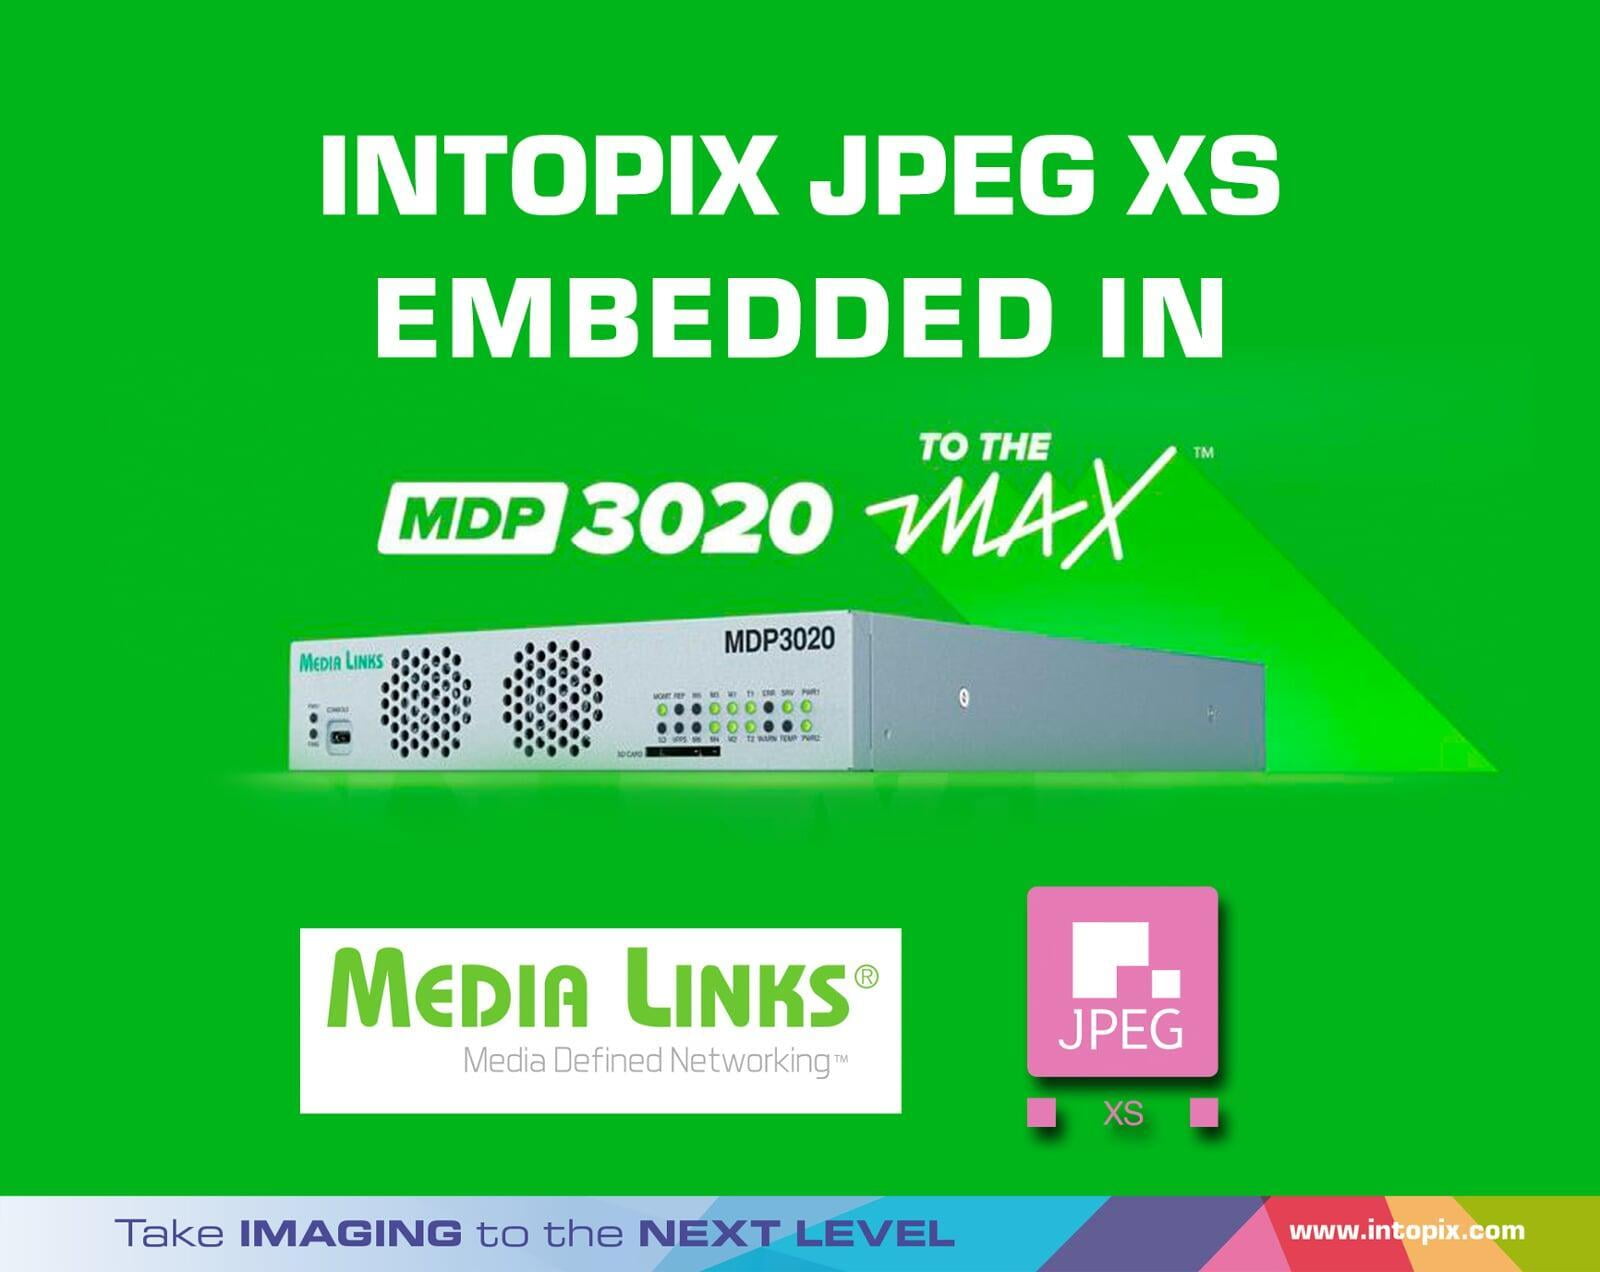 라이브 콘텐츠에 대한 끝없는 수요를 충족하기 위해 MDP3020 MAX에 내장된 JPEG XS